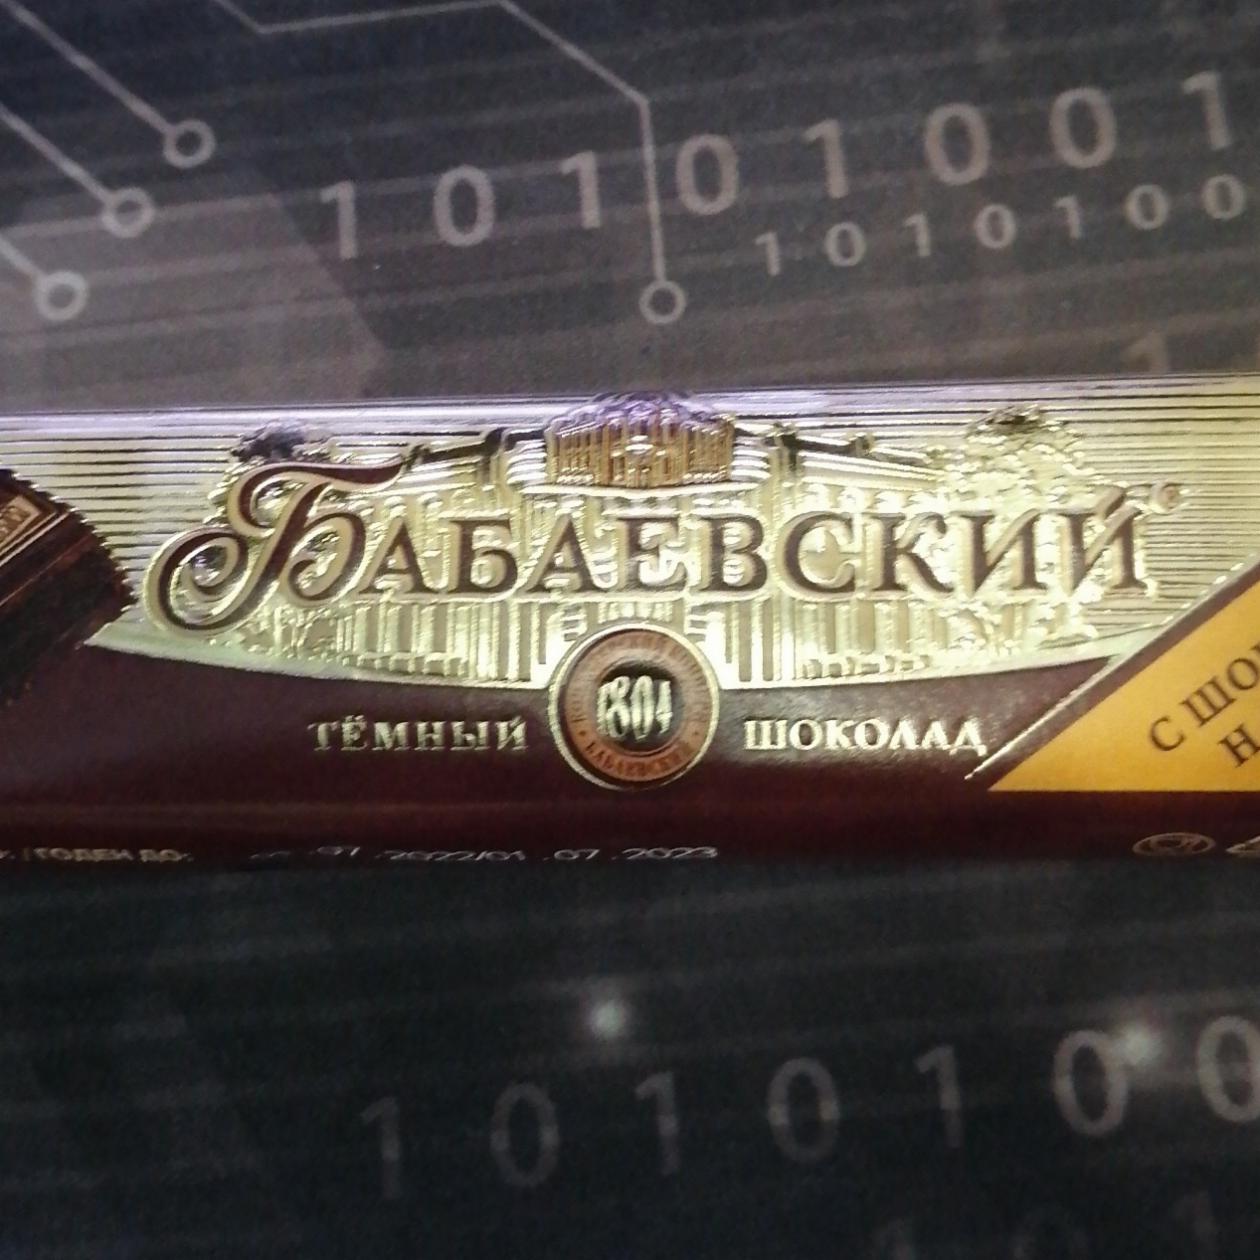 Fotografie - Dunkle Schokolade 'Babaevskij' mit Kondensmilch-füllung